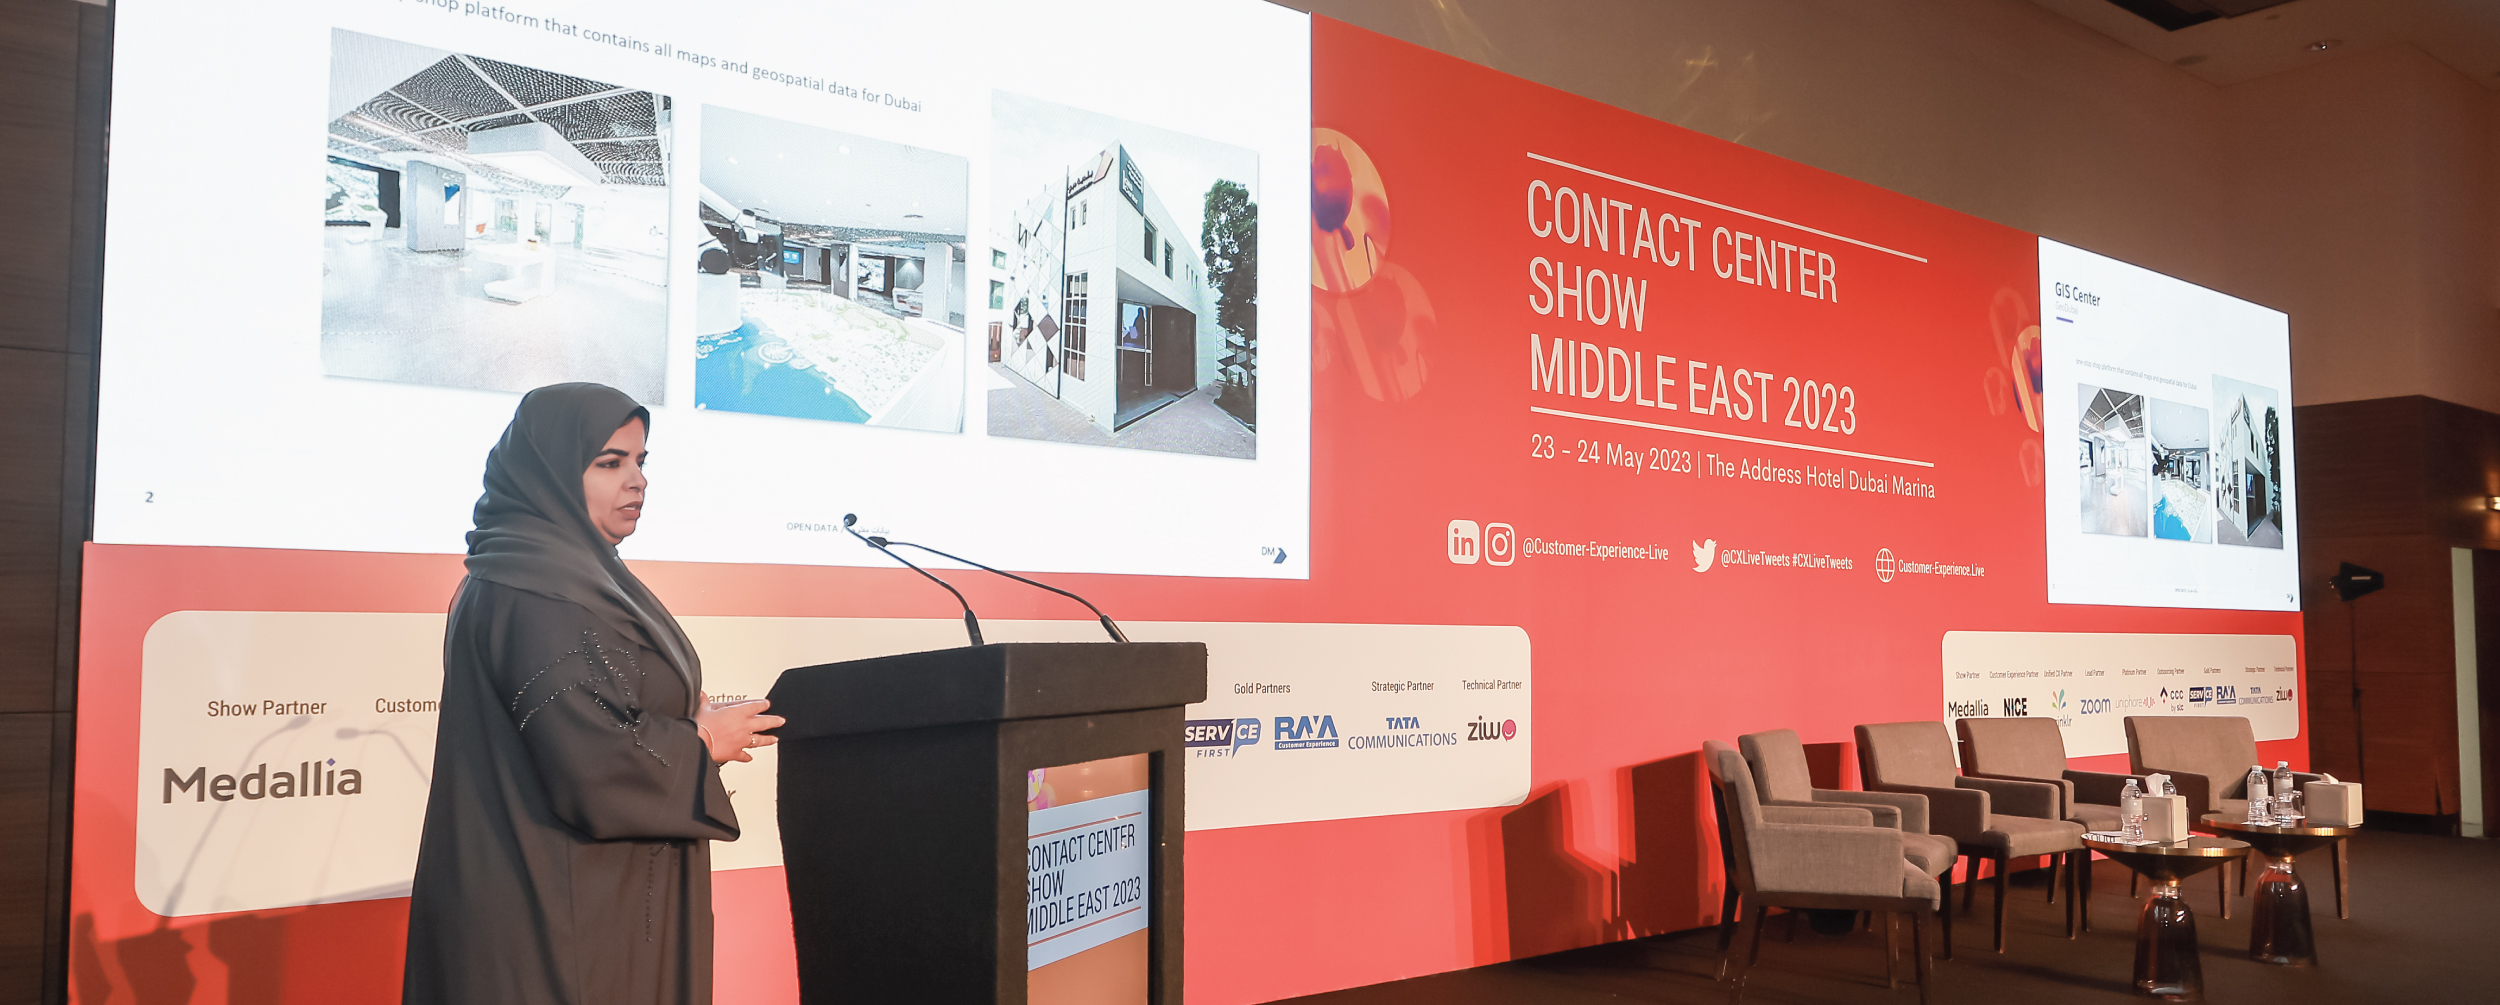 مؤتمر Contact Center Show Middle East 2023 مايو 2023